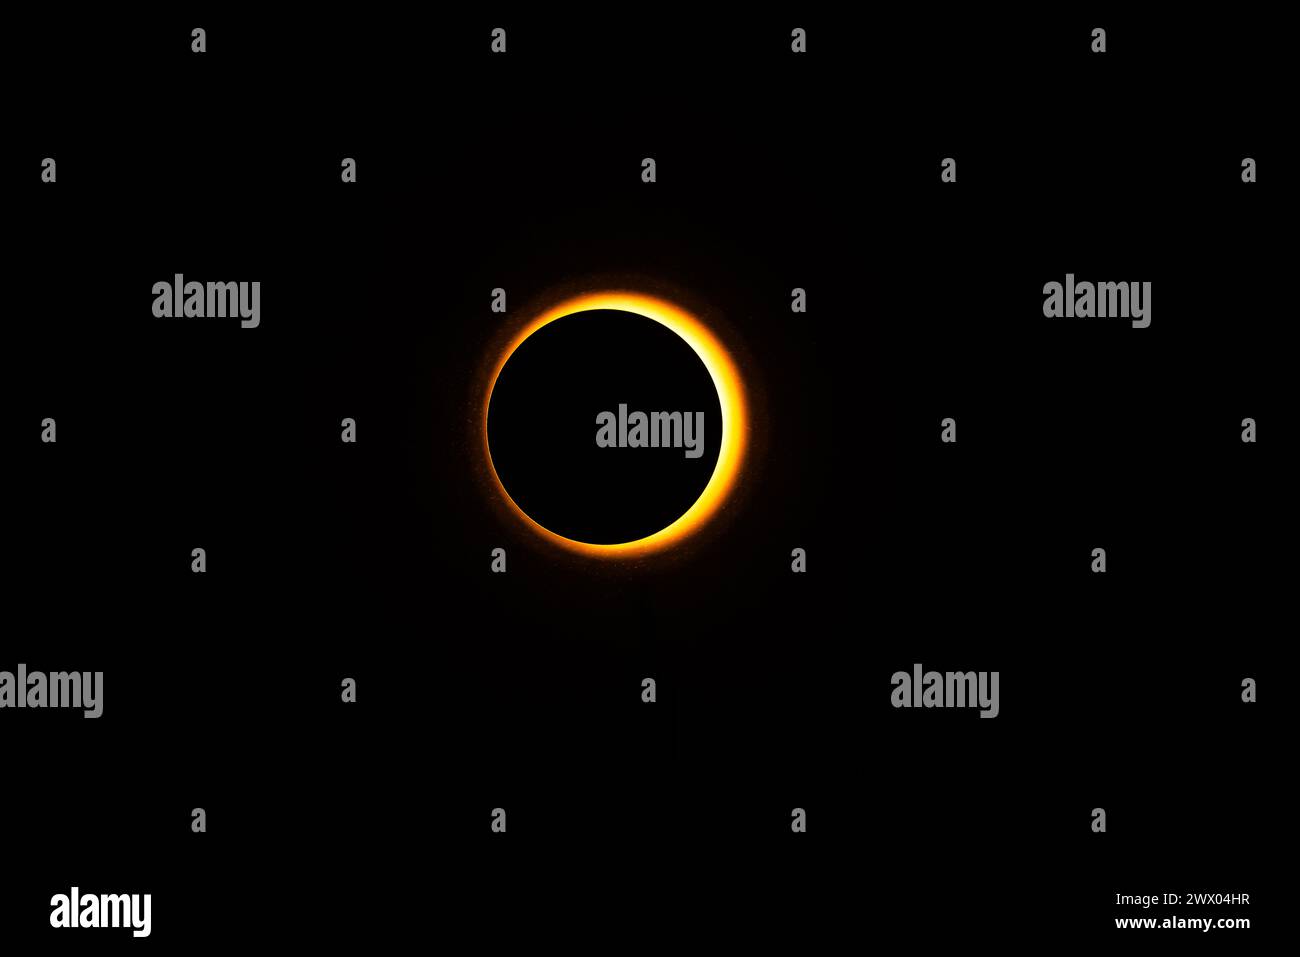 Eclipse-Nachbildungsbilder in einem Studio mit hellem Licht und einer runden Kappe mit etwas atmosphärischem Spray für, na ja, Atmosphäre. Stockfoto